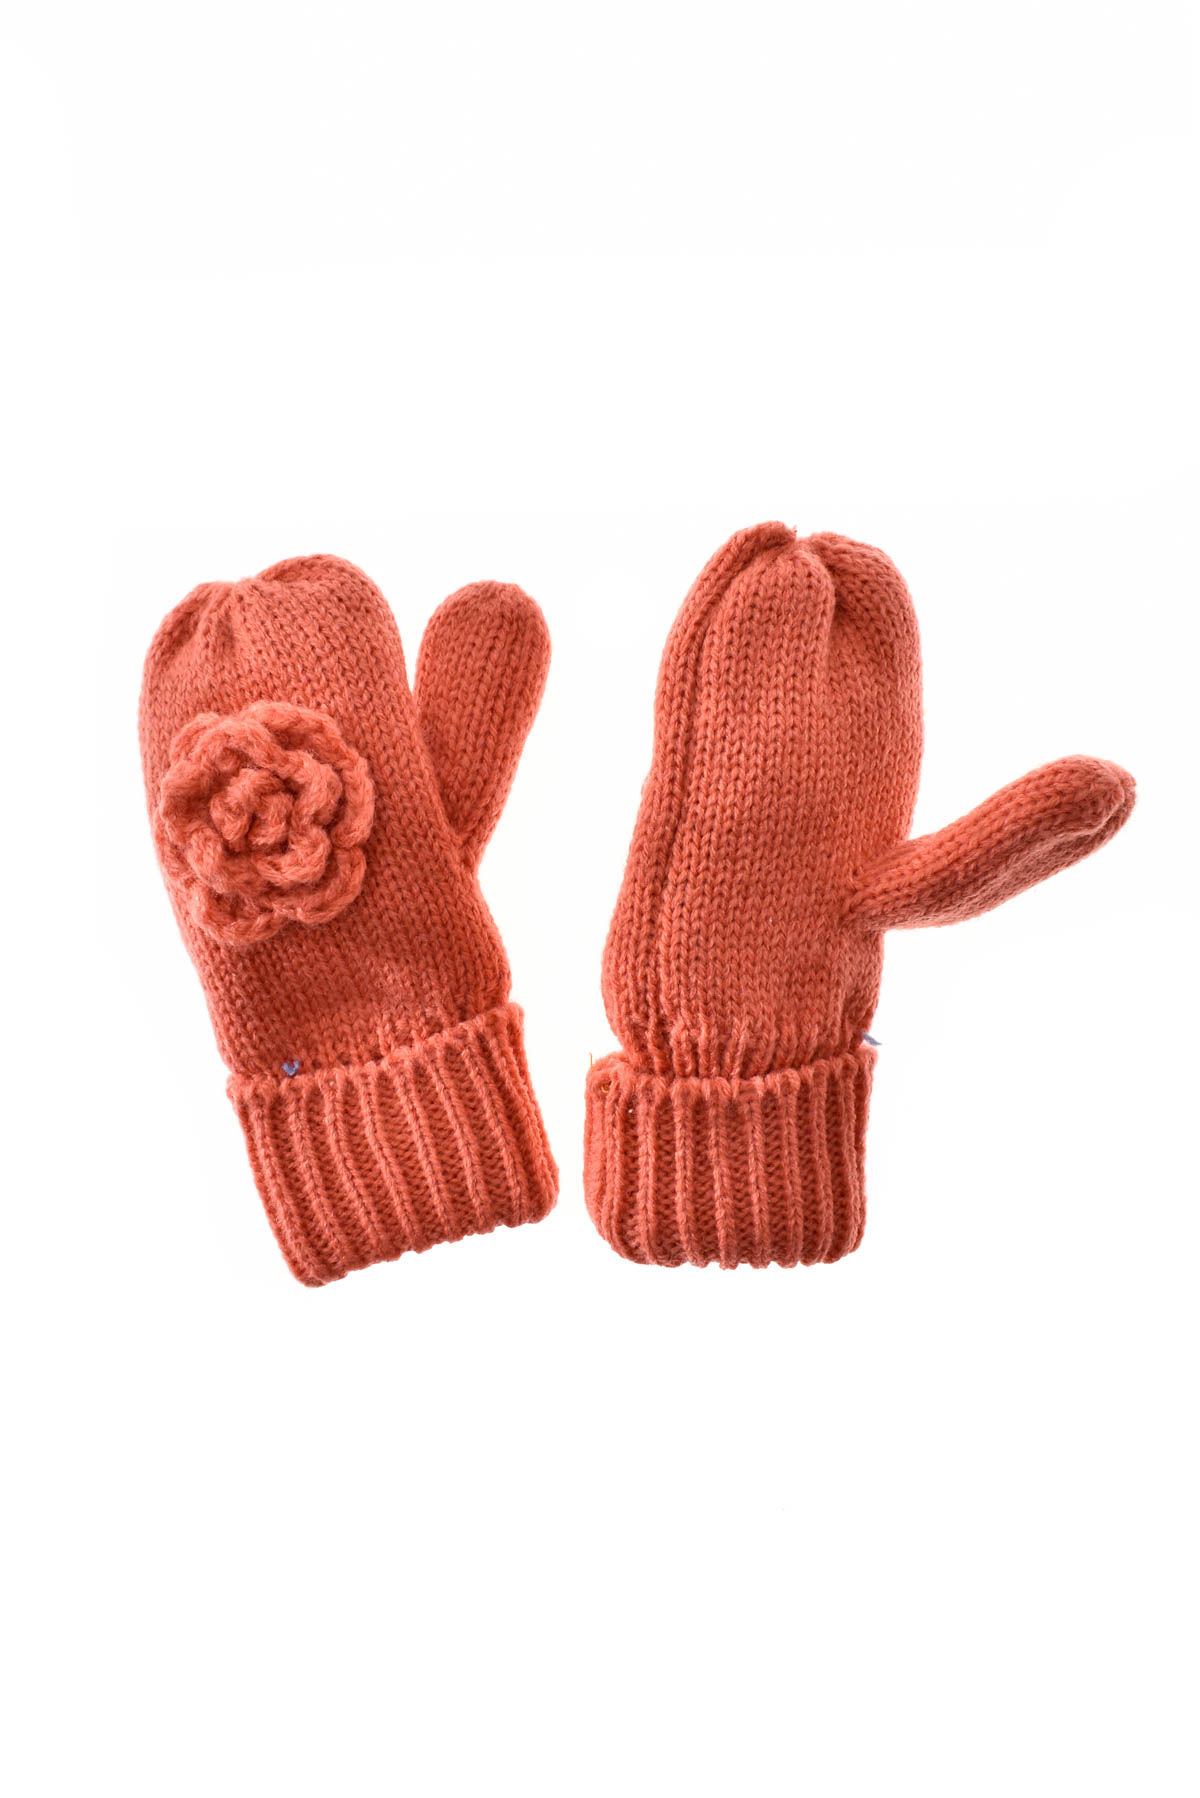 Gloves - Yo! CLub - 1